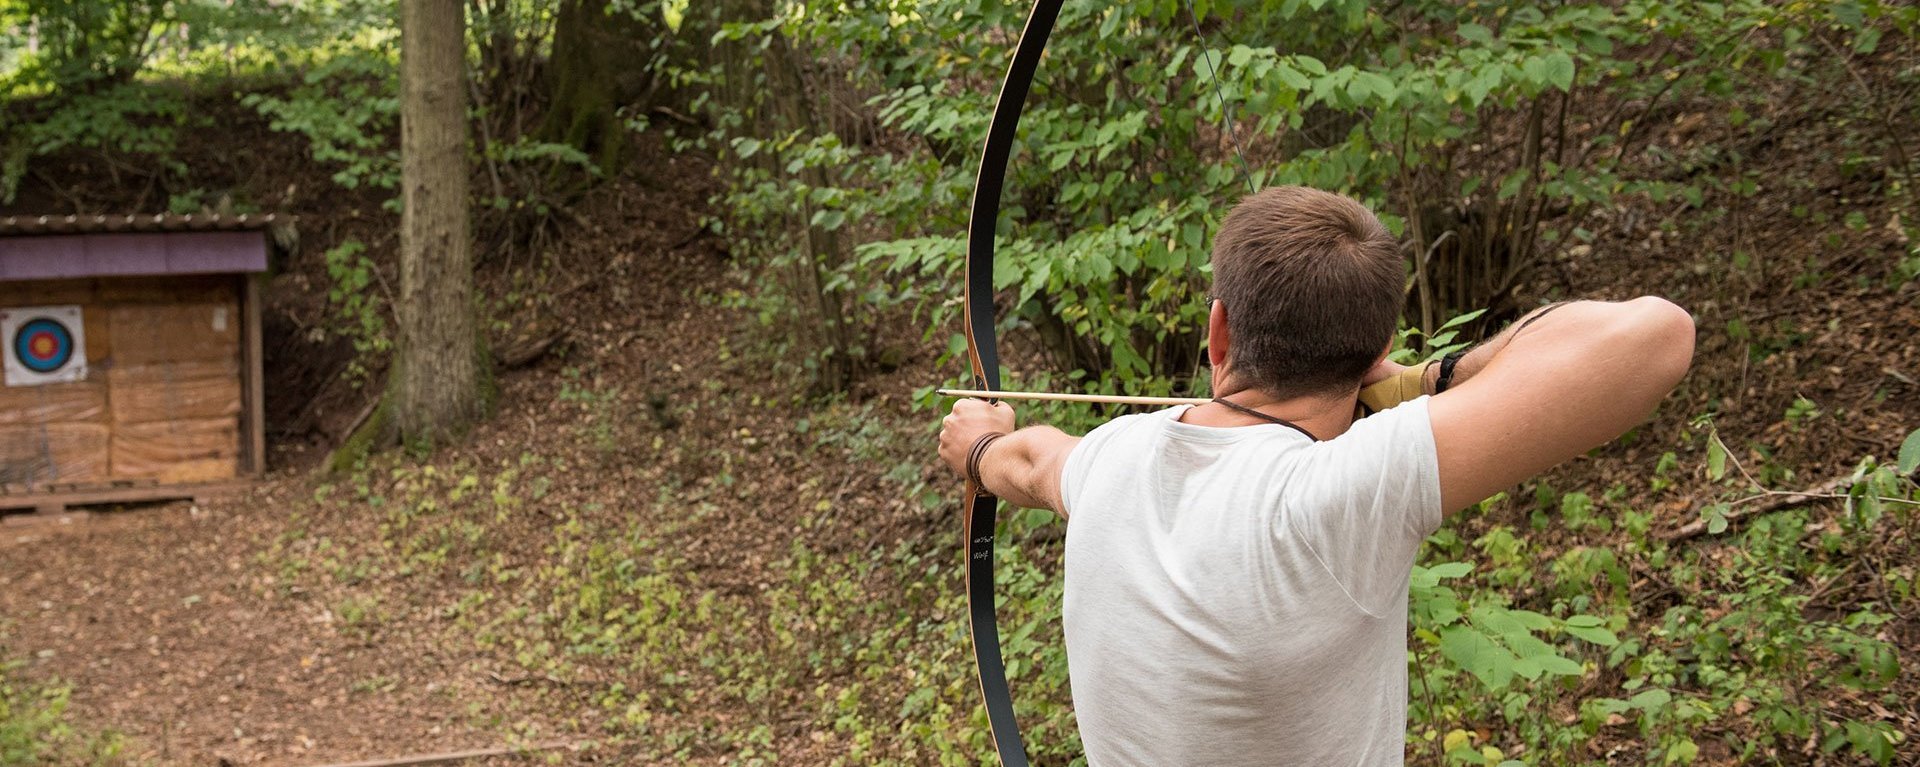 Im Wald: ein Mann zielt mit Pfeil und Bogen auf eine Zielscheibe 